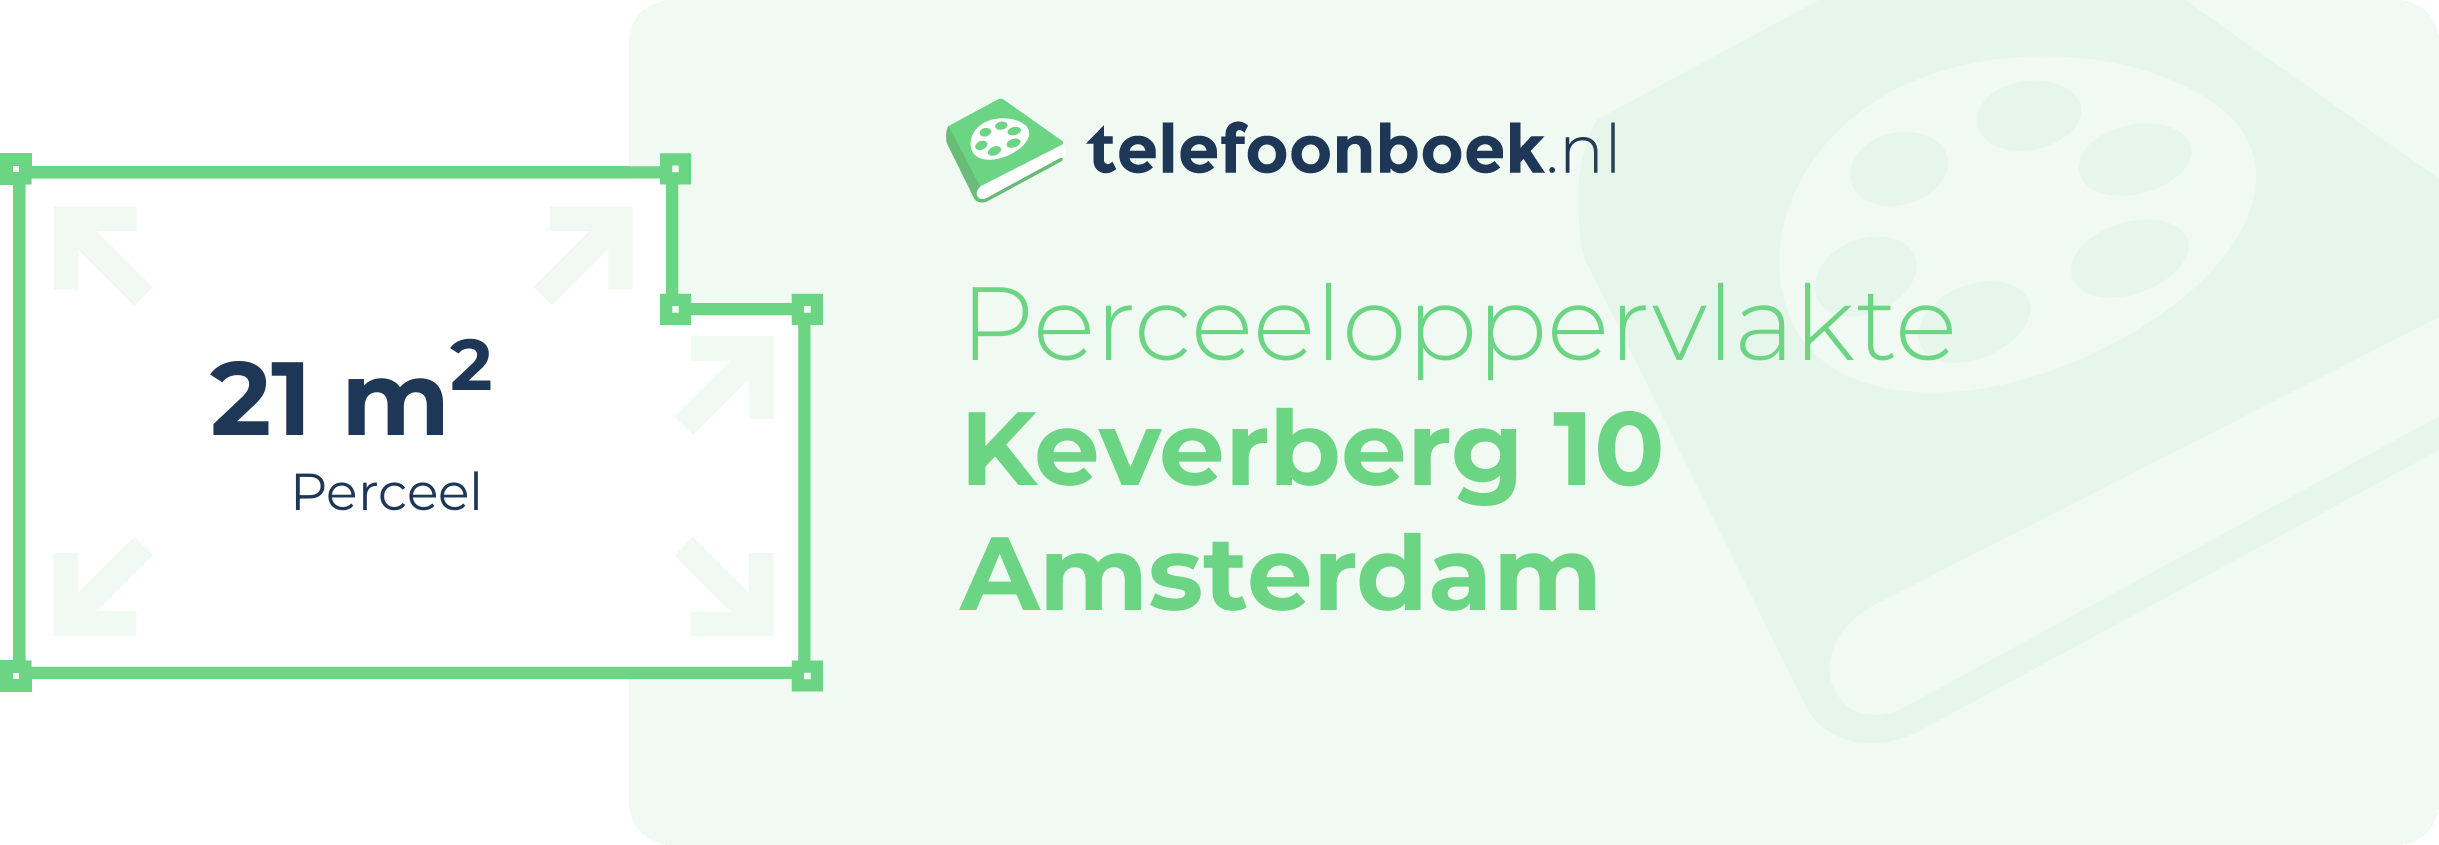 Perceeloppervlakte Keverberg 10 Amsterdam